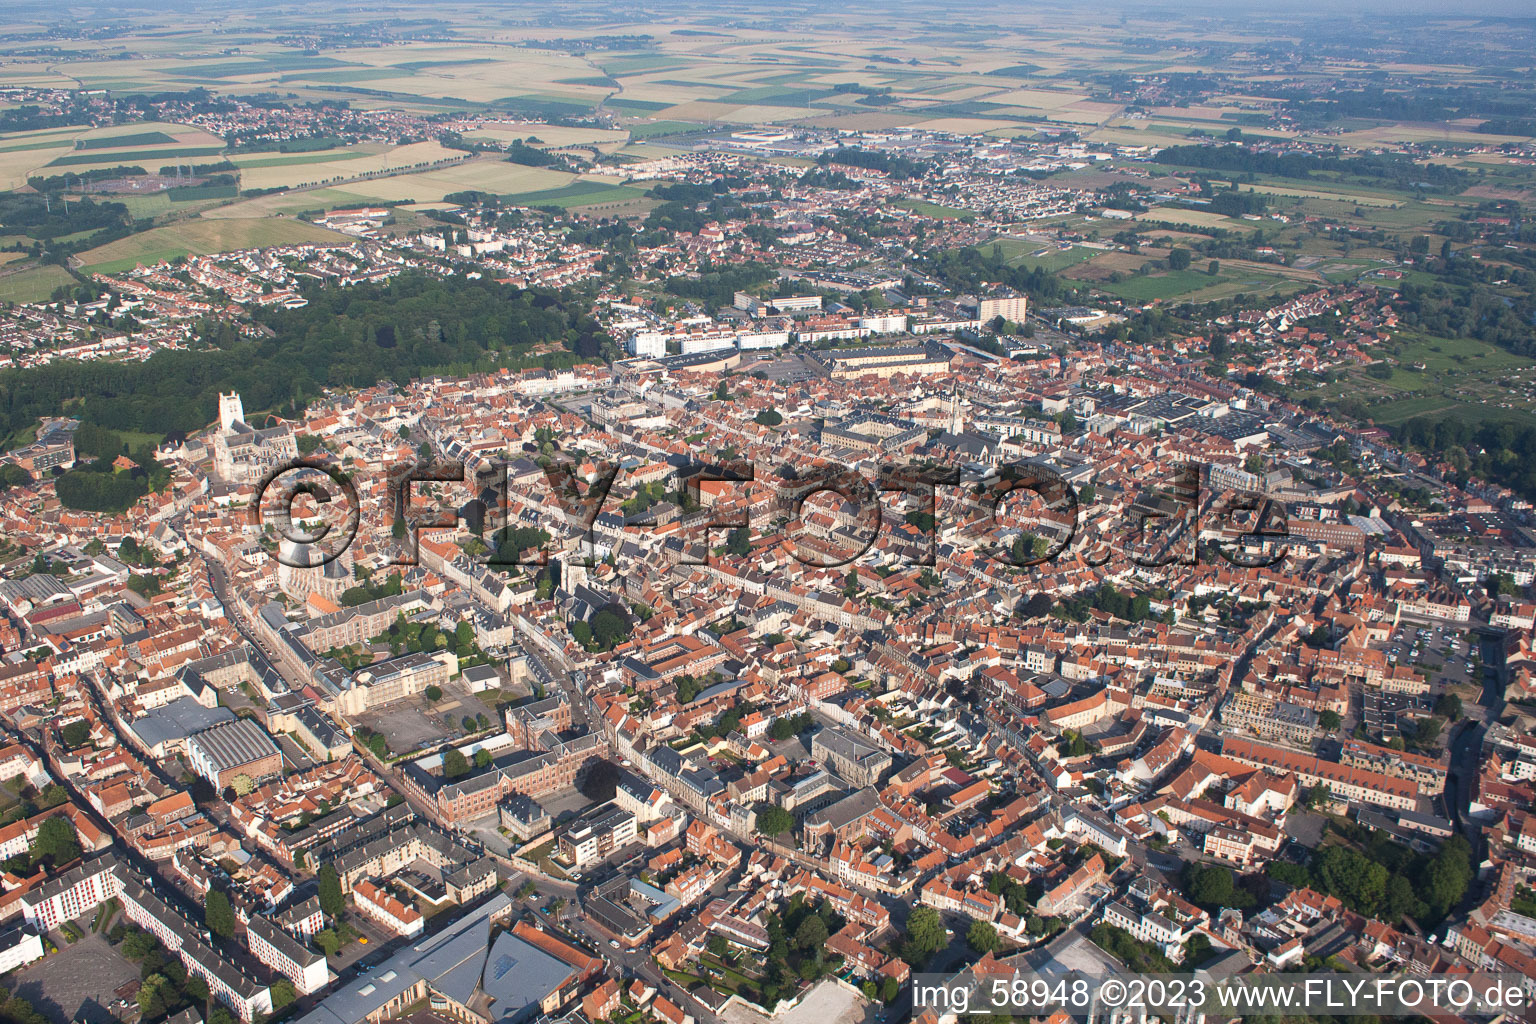 Luftbild von Saint-Omer im Bundesland Pas-de-Calais, Frankreich